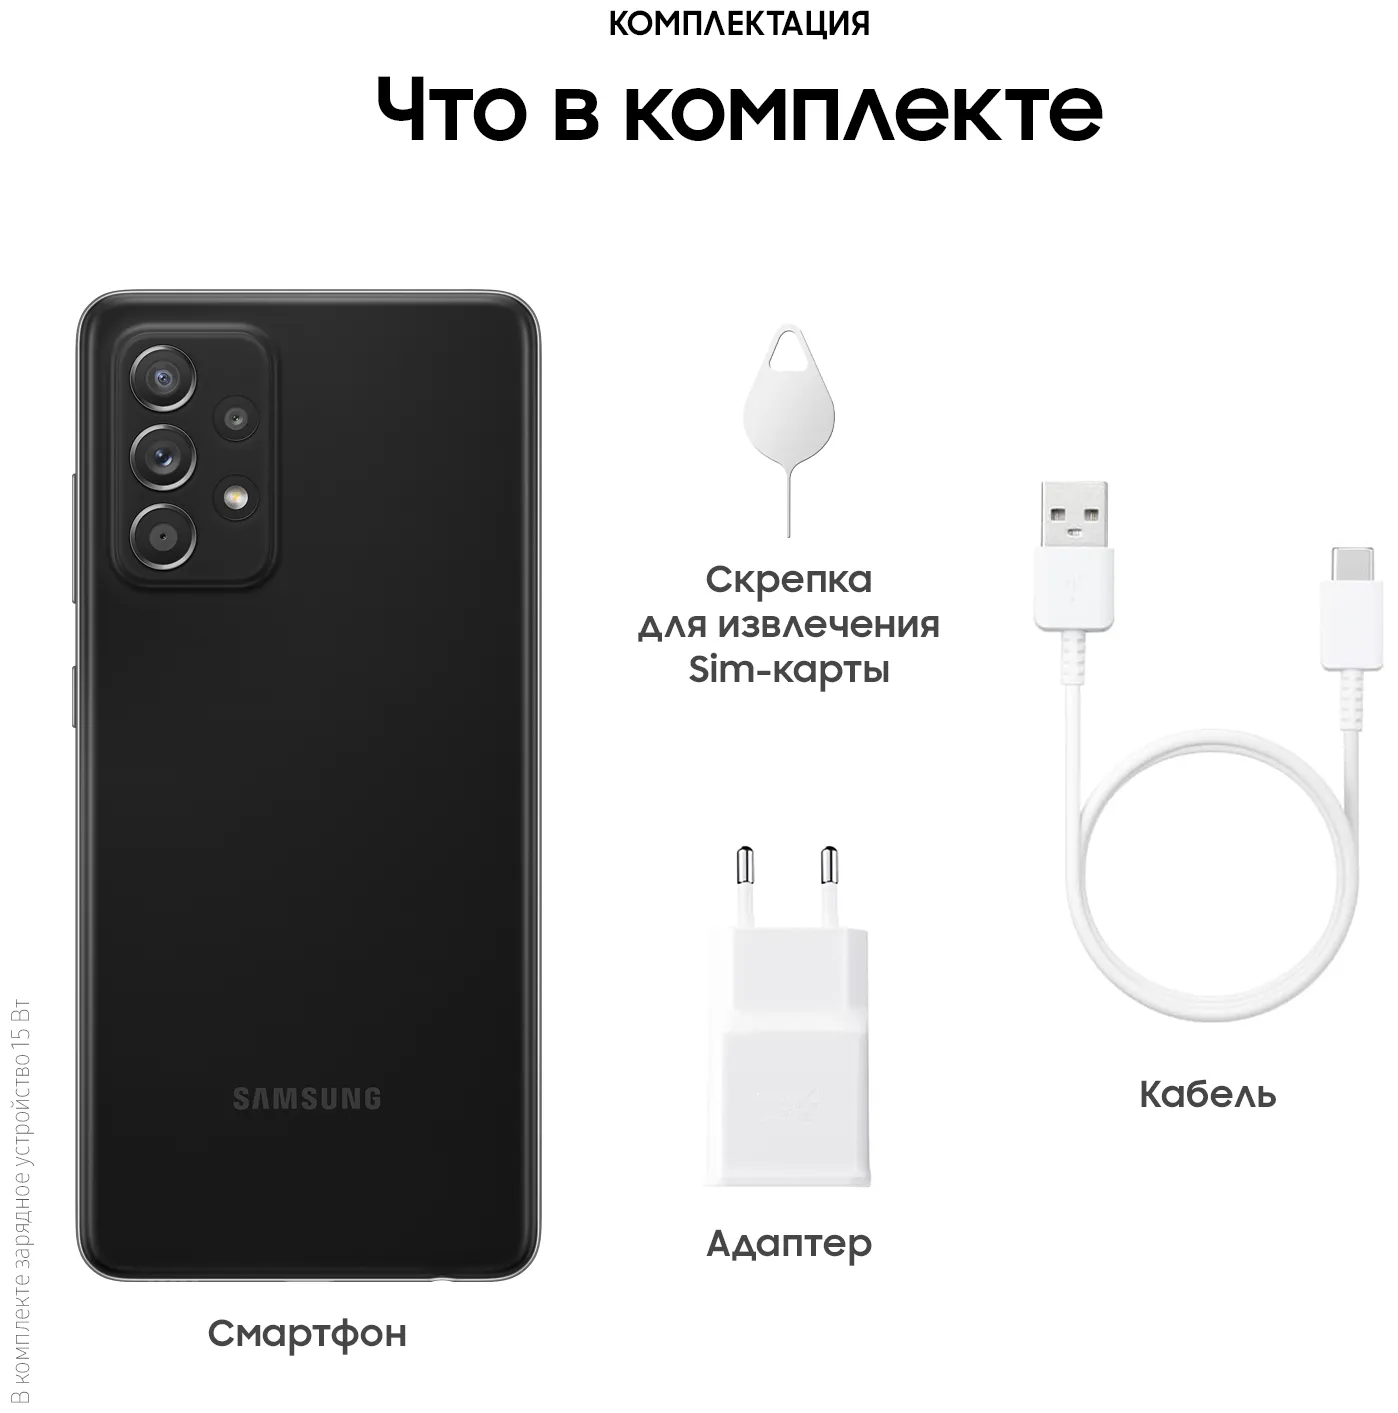 Samsung Galaxy A52 4/128 GB, qora#18